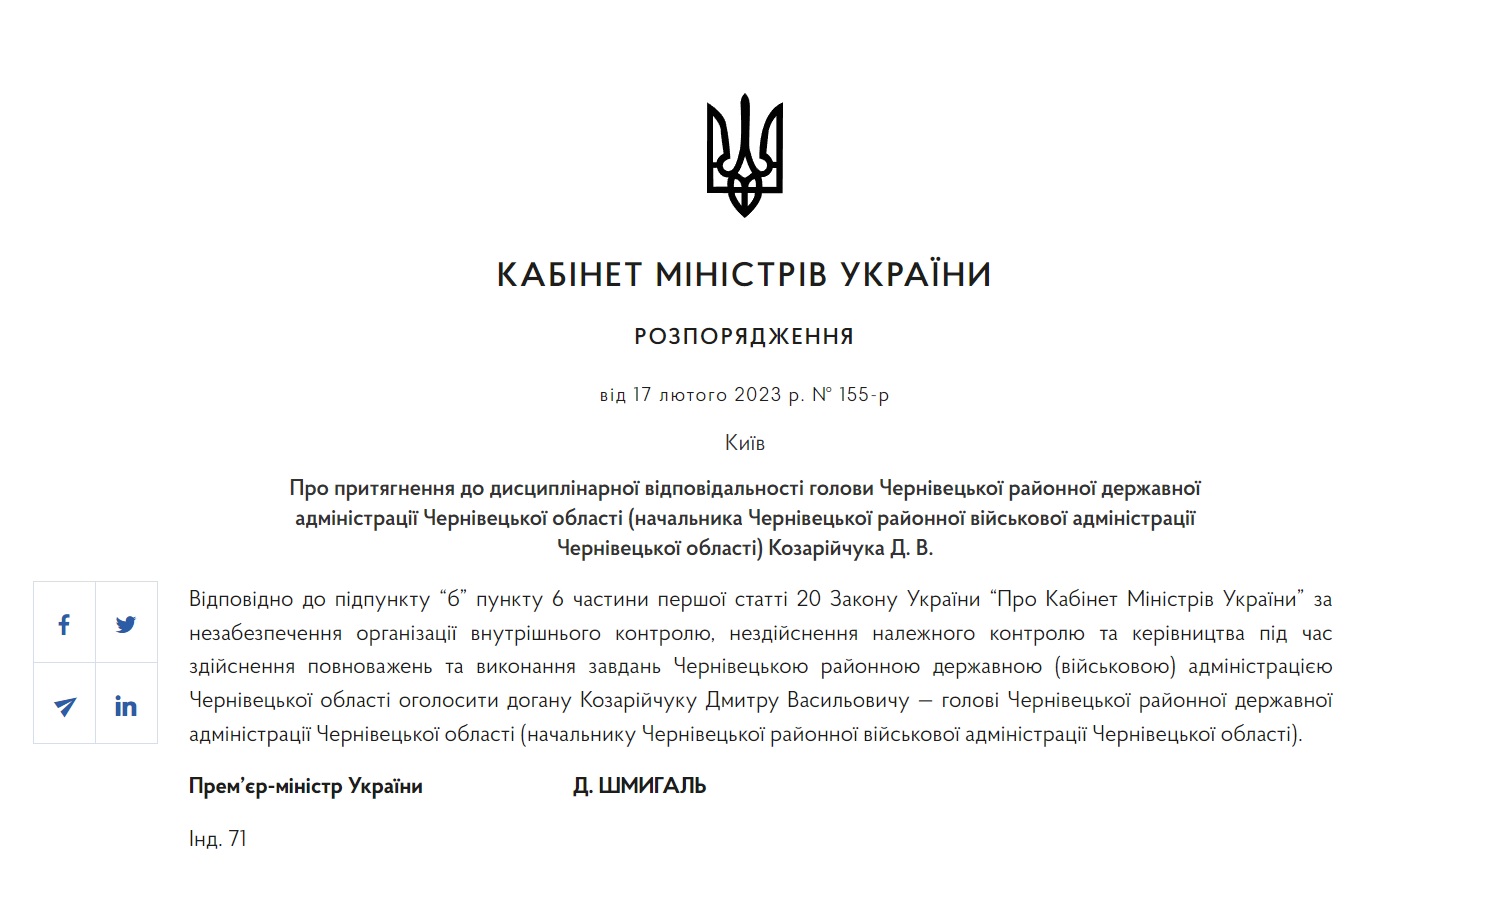 Кабмін оголосив догану начальнику Чернівецької районної військової адміністрації Козарійчуку